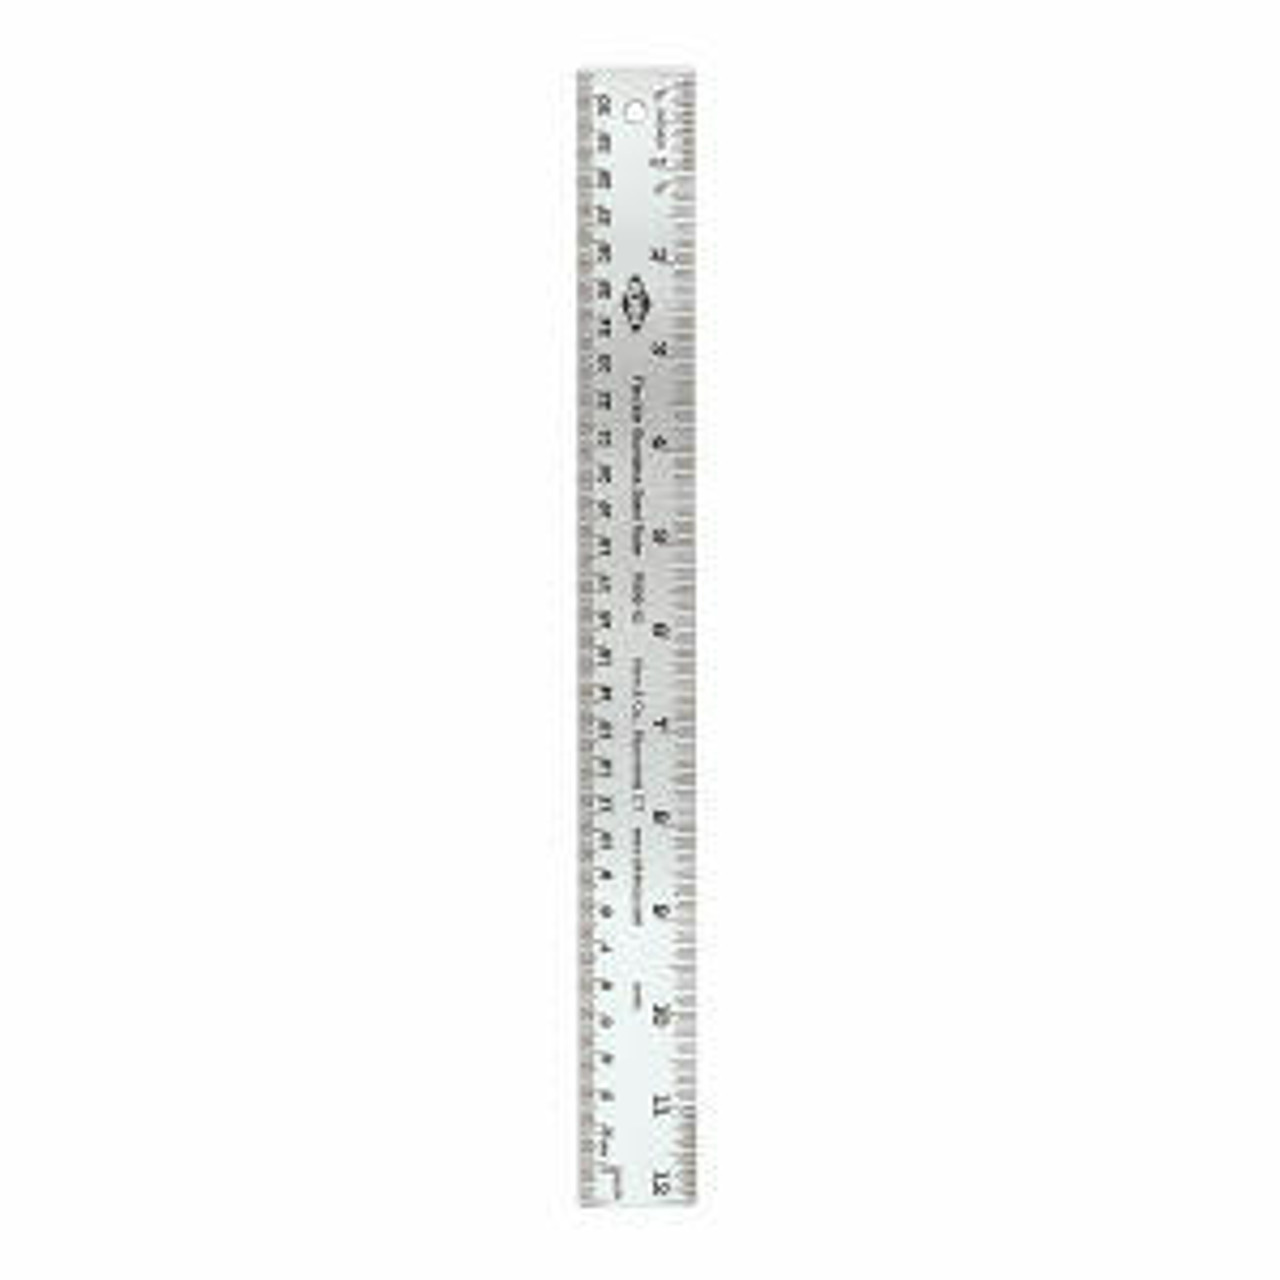 12 Inch Custom Printed Flexible Rulers